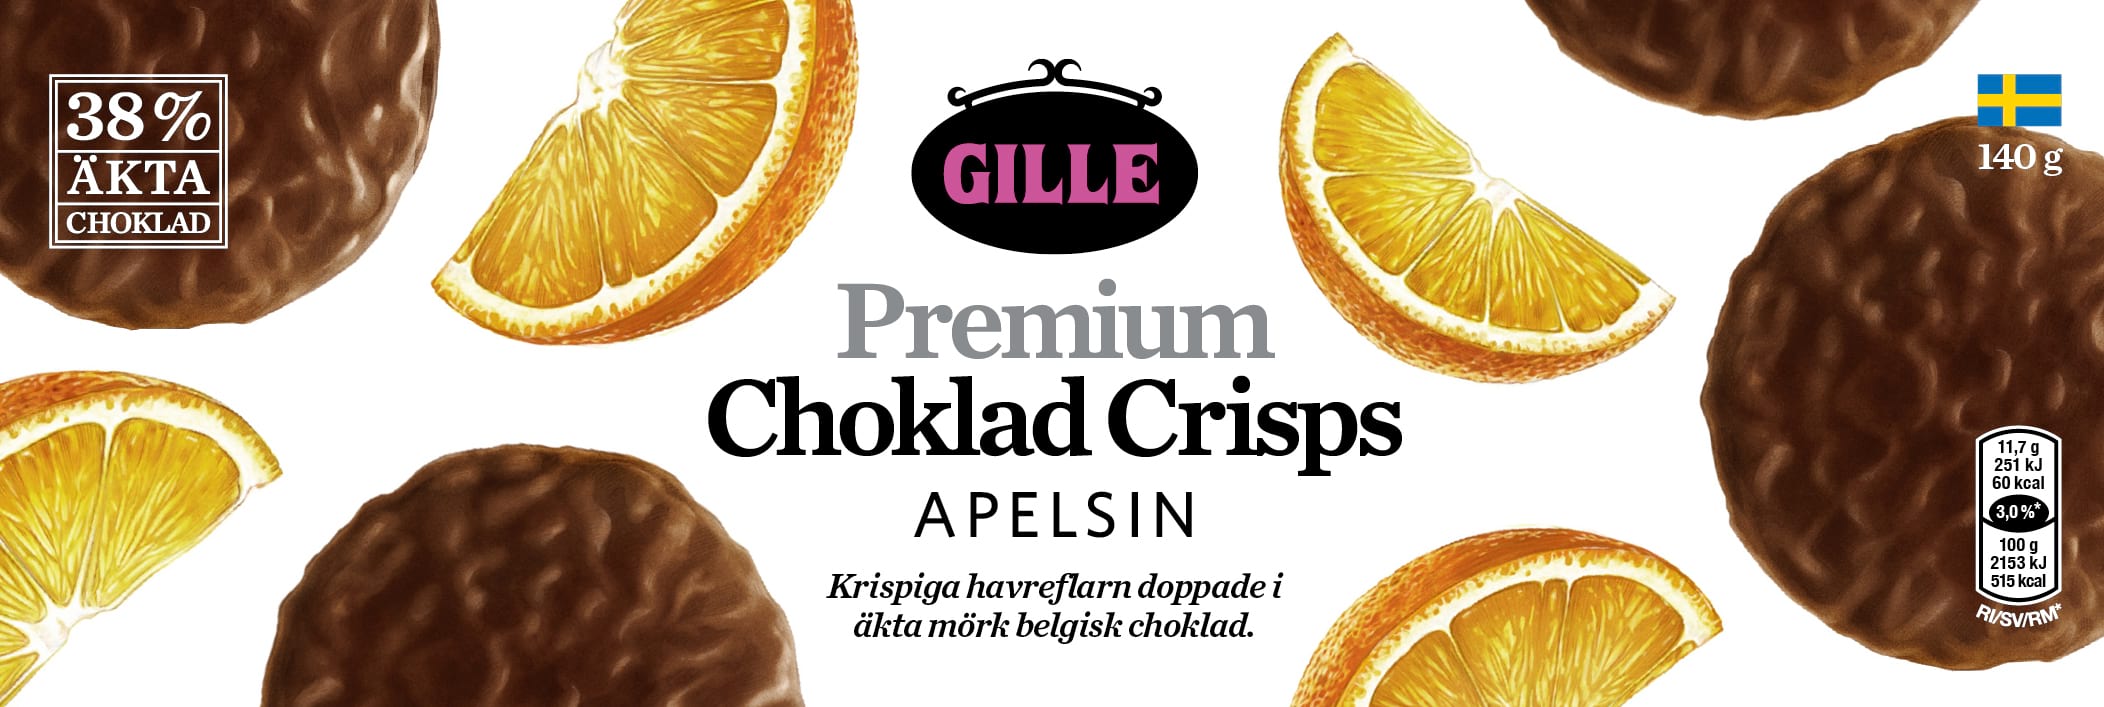 Illustrationen på förpackningen till Gille premium choklad crisps apelsin